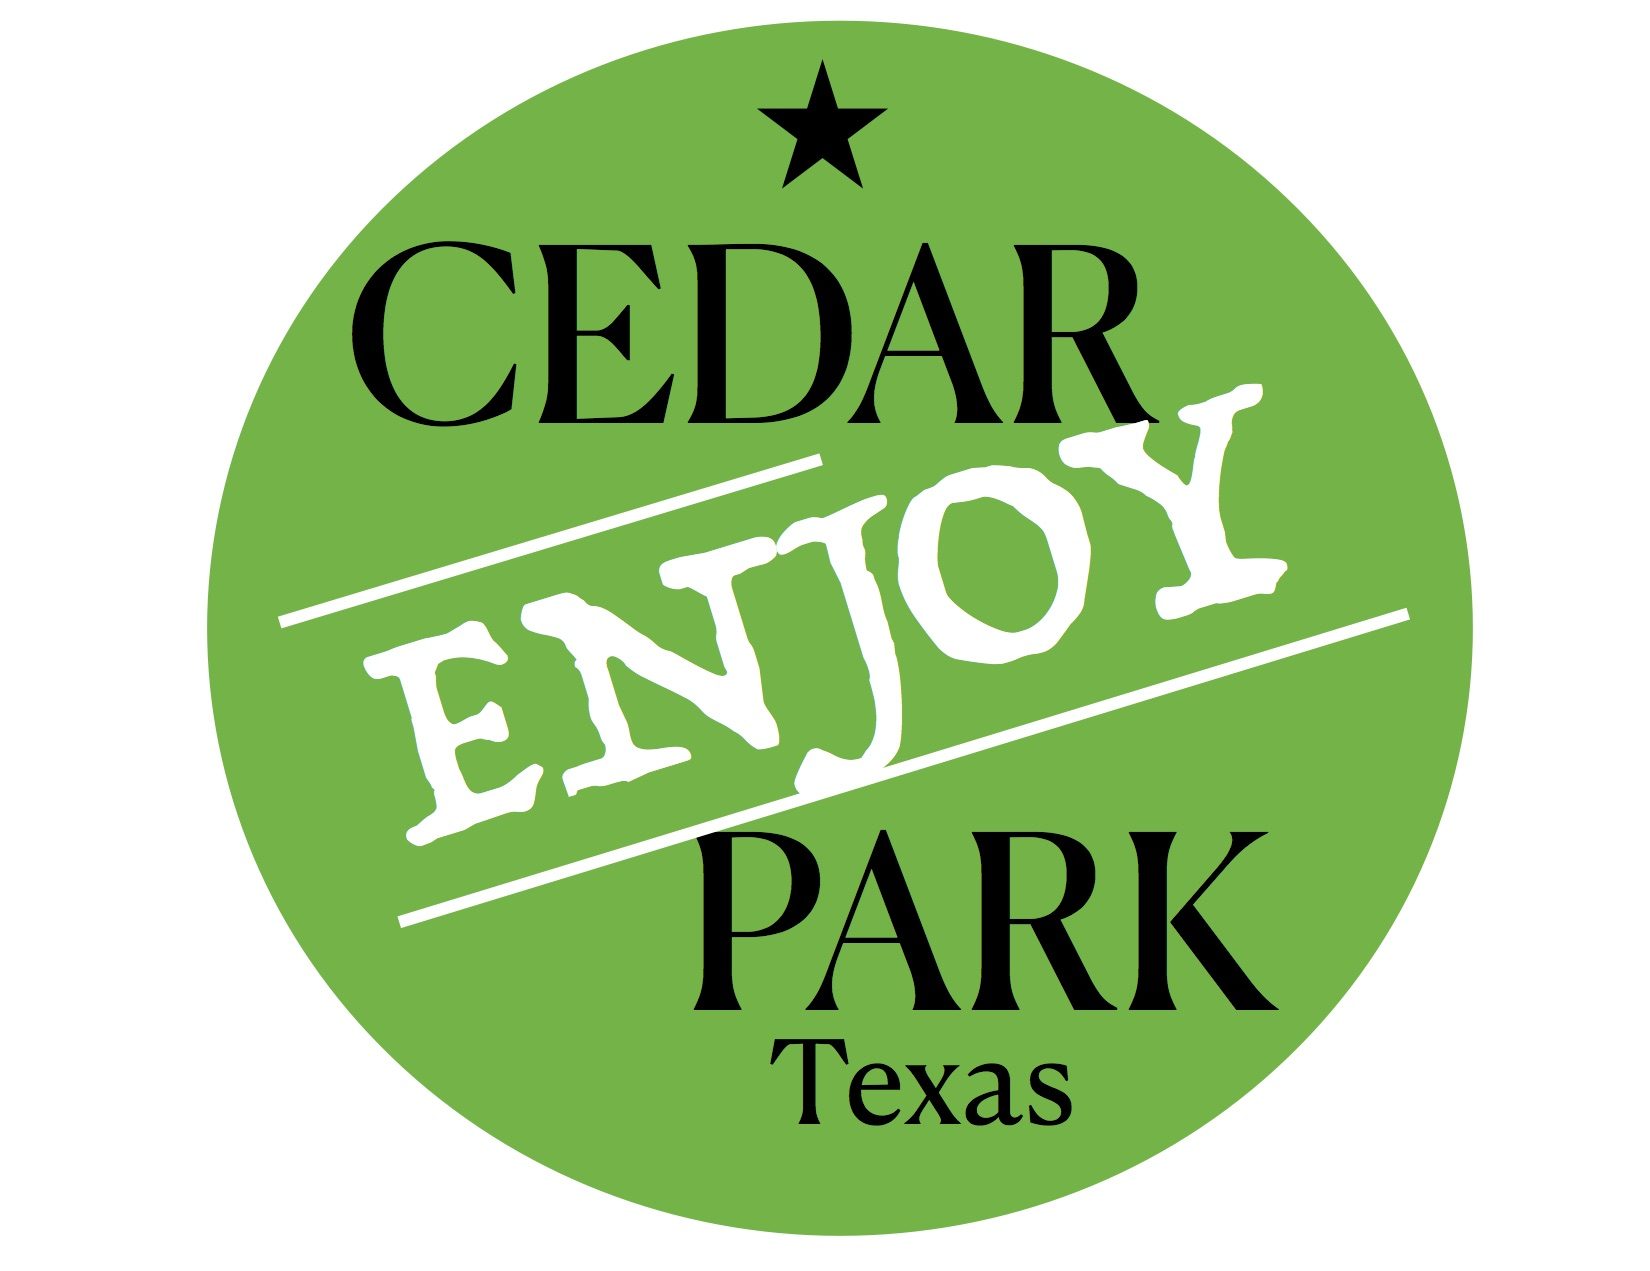 Enjoy Cedar Park